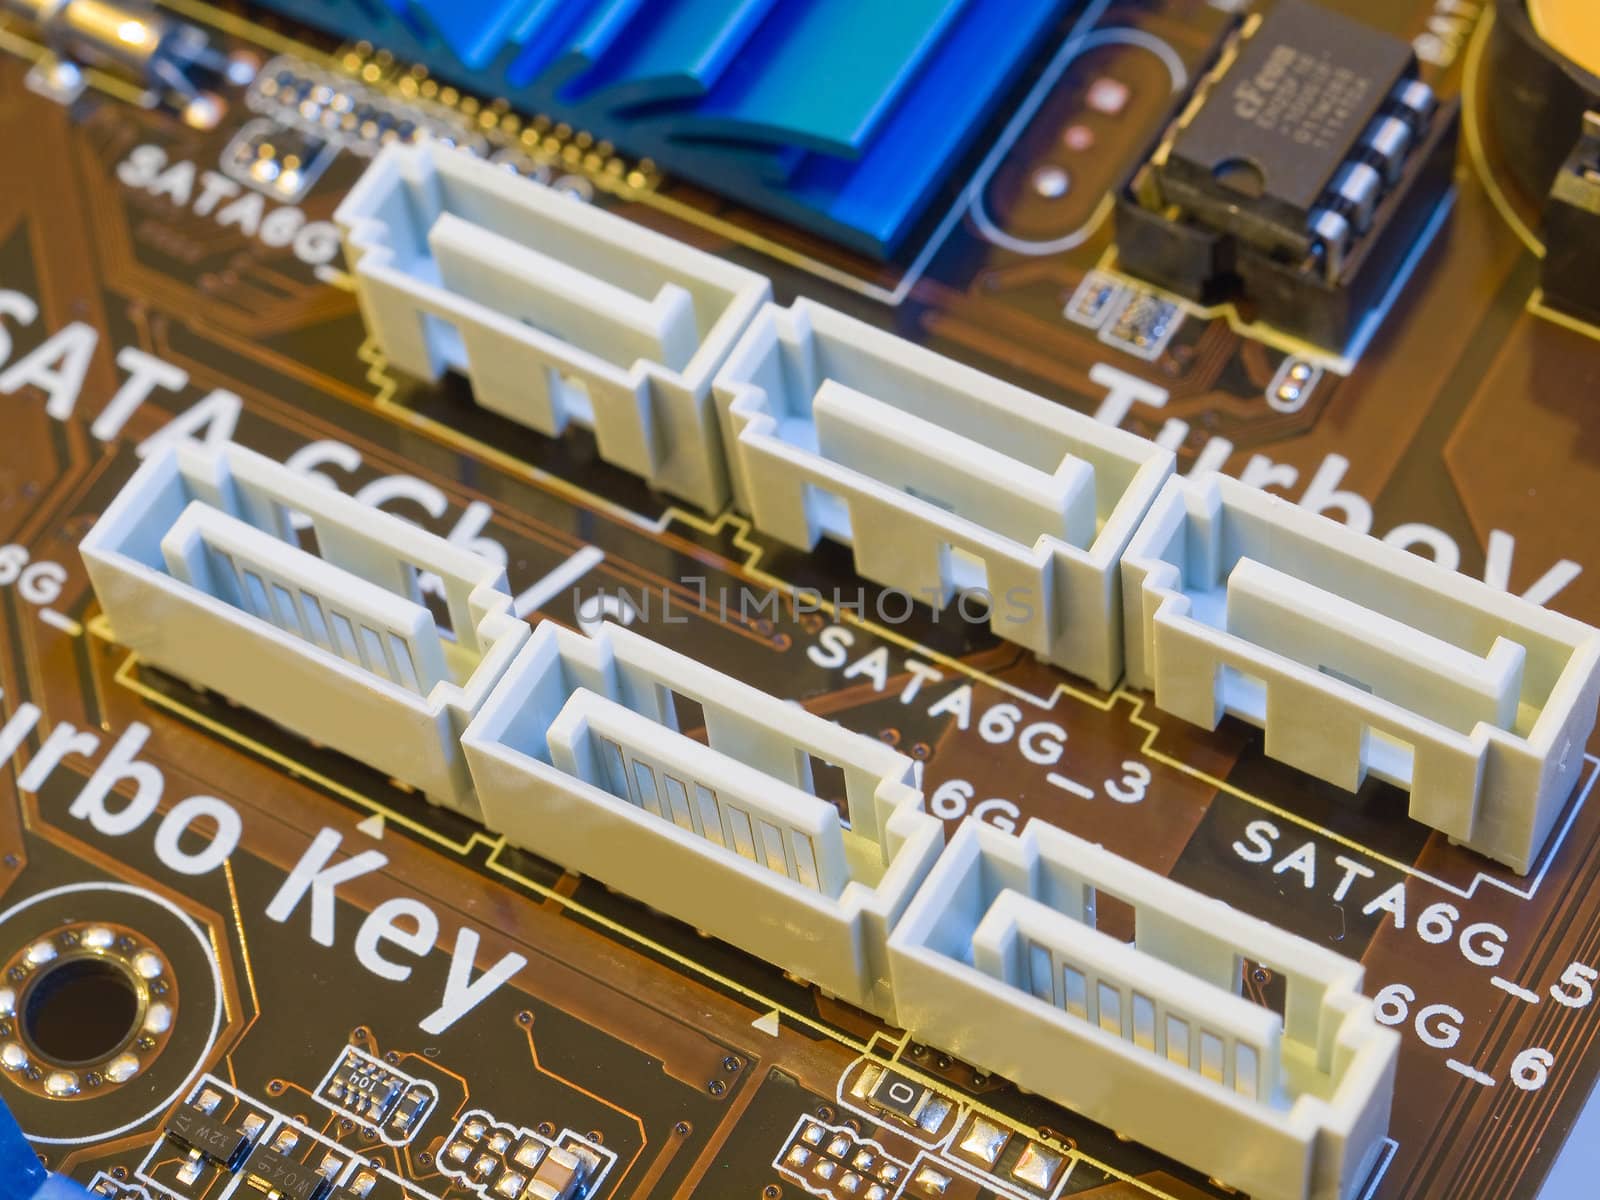 SATA III slots on motherboard by kvinoz